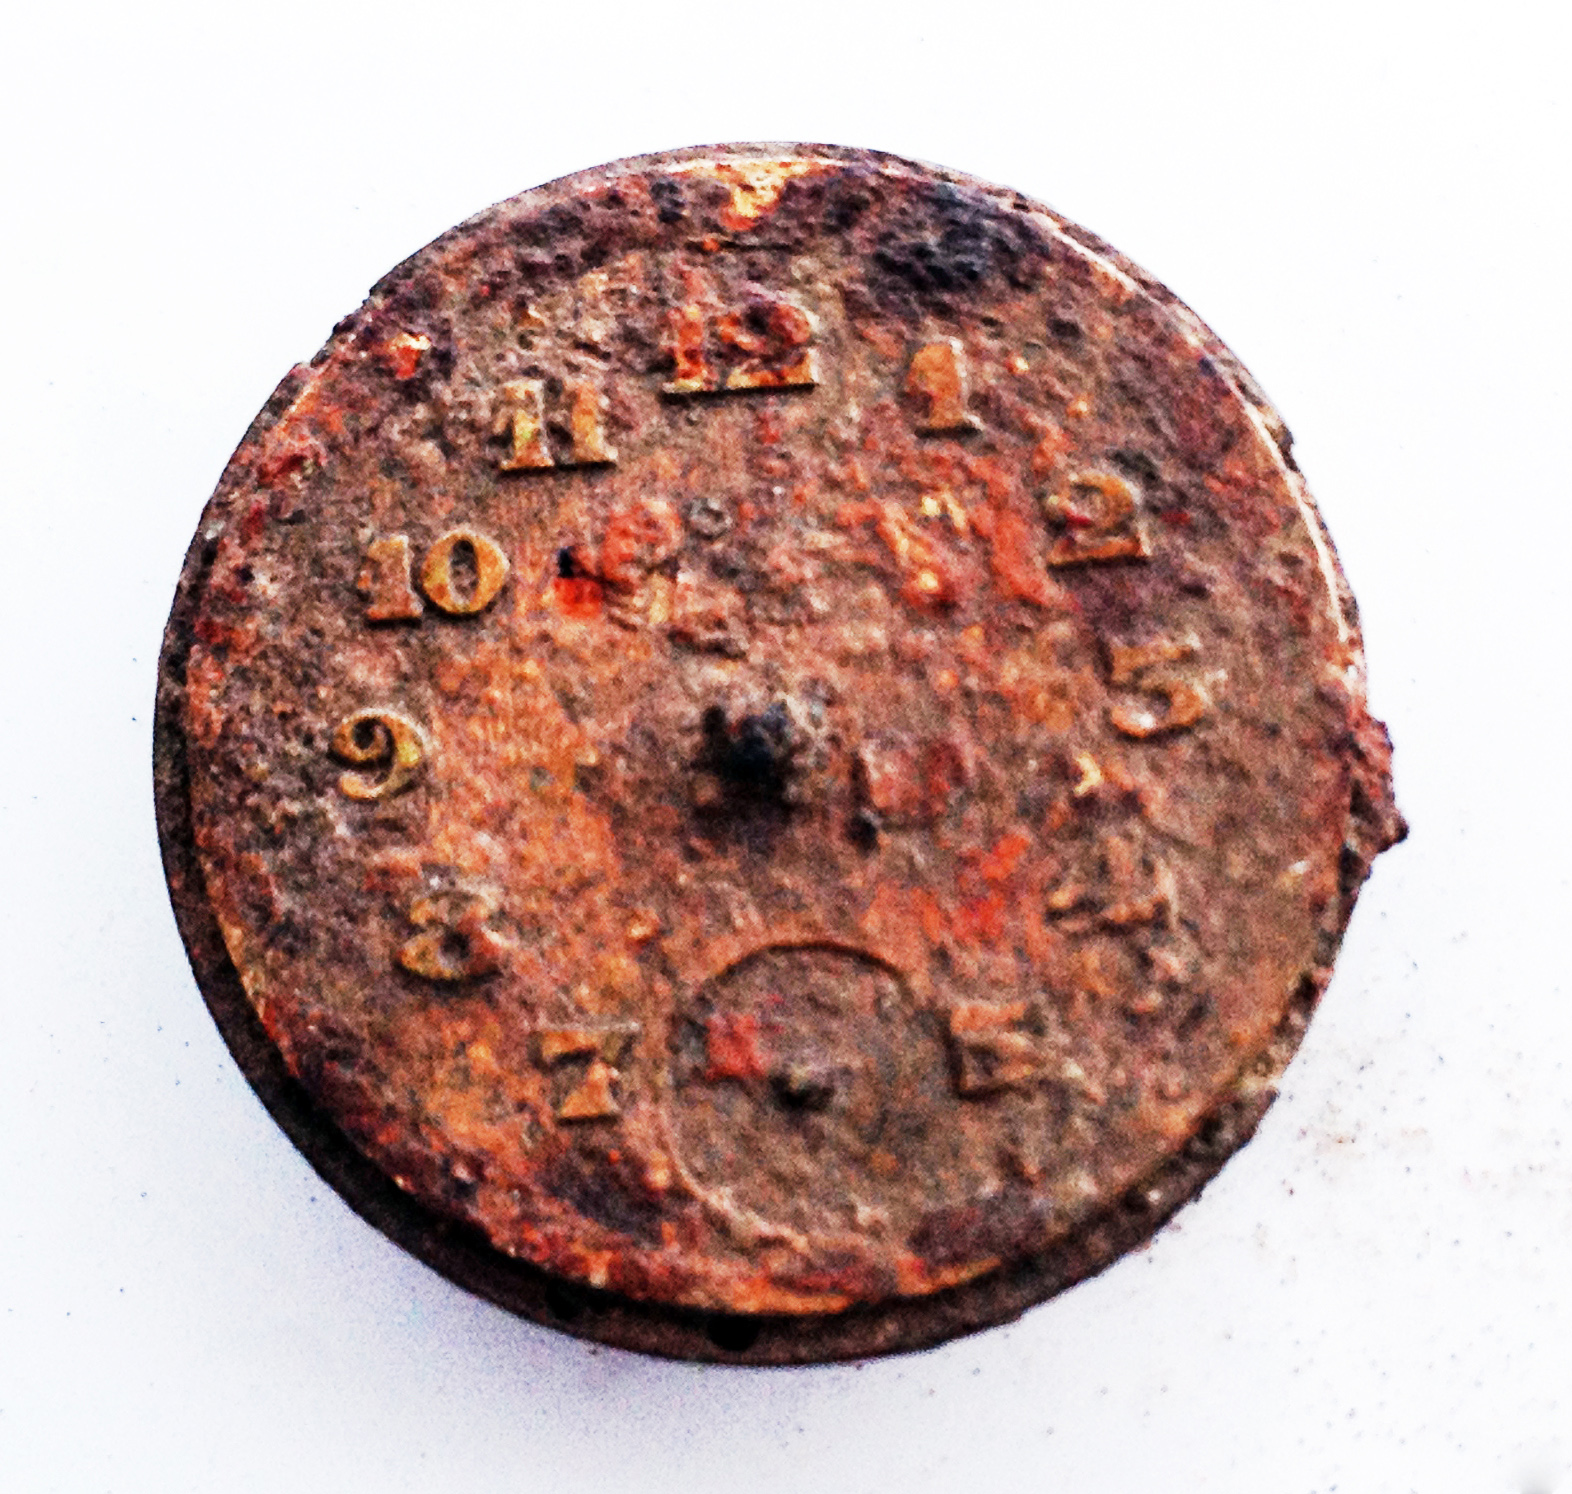 שעון שנמצא בחפירות הארכיאולוגיות בסוביבור. צילום: יורם חיימי, רשות העתיקות